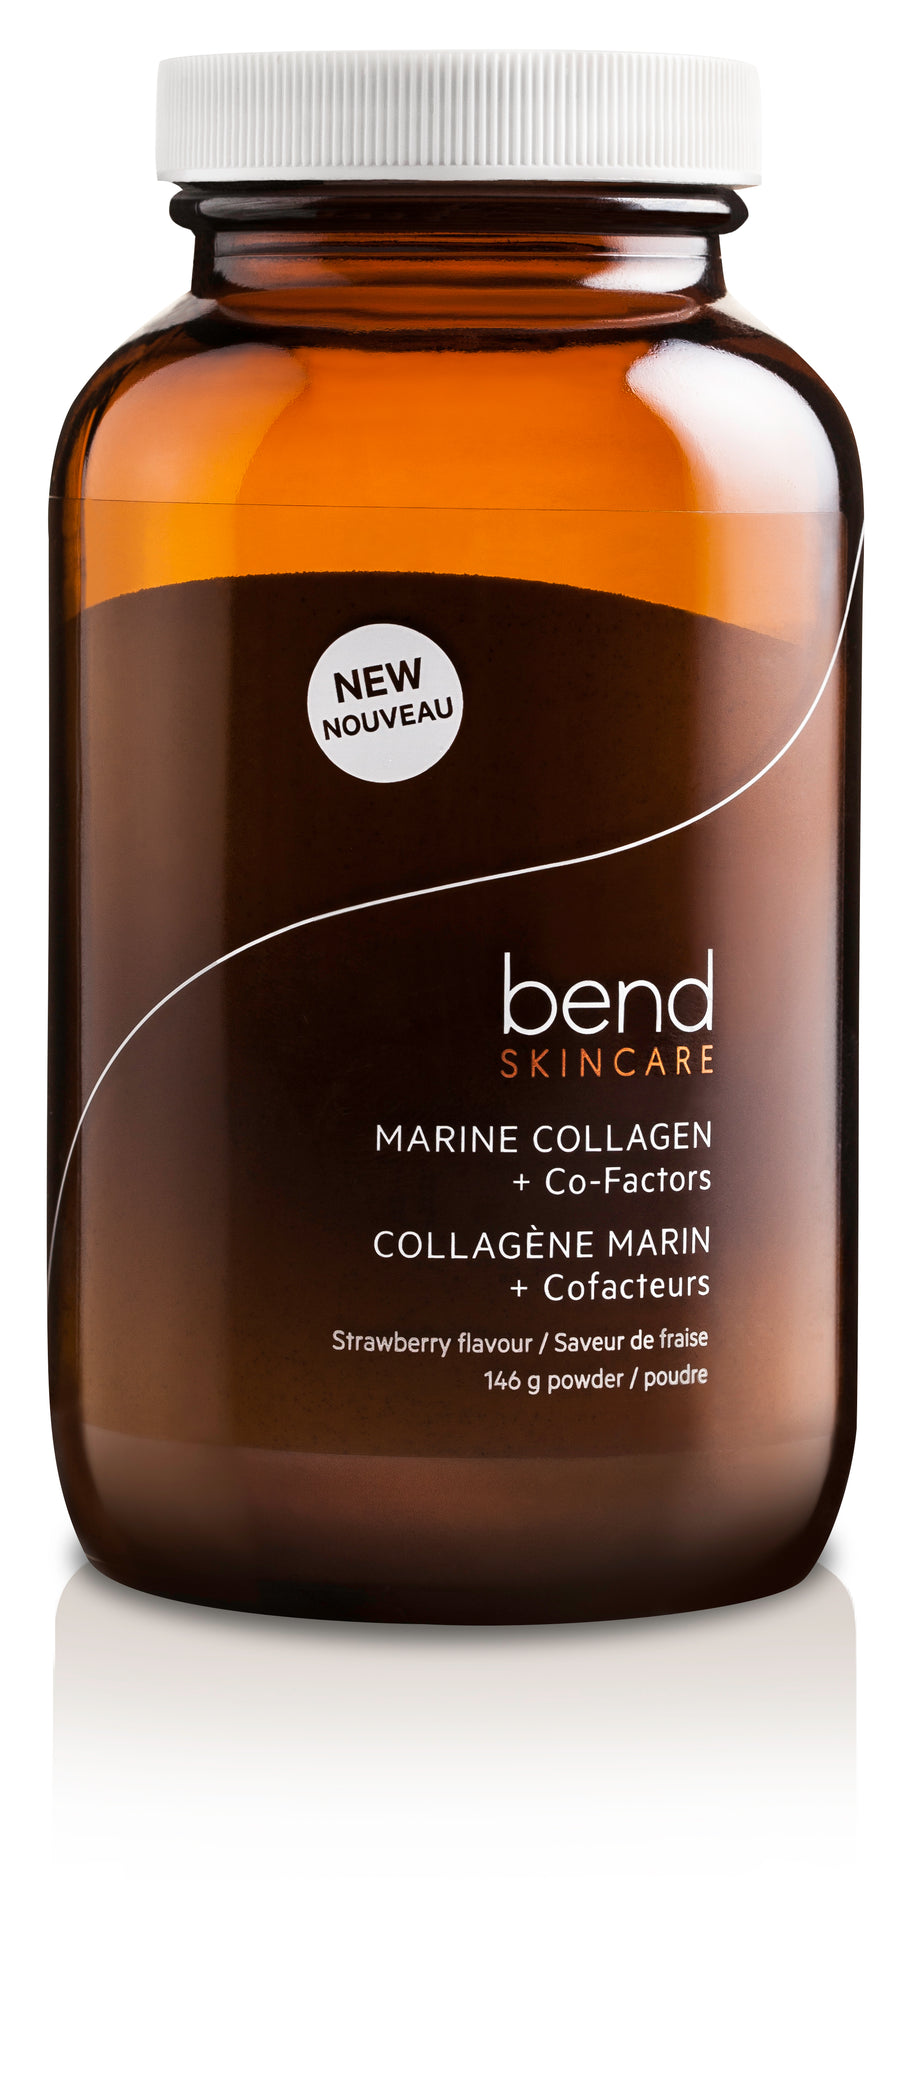 Bend Marine Collagen + Co-Factors